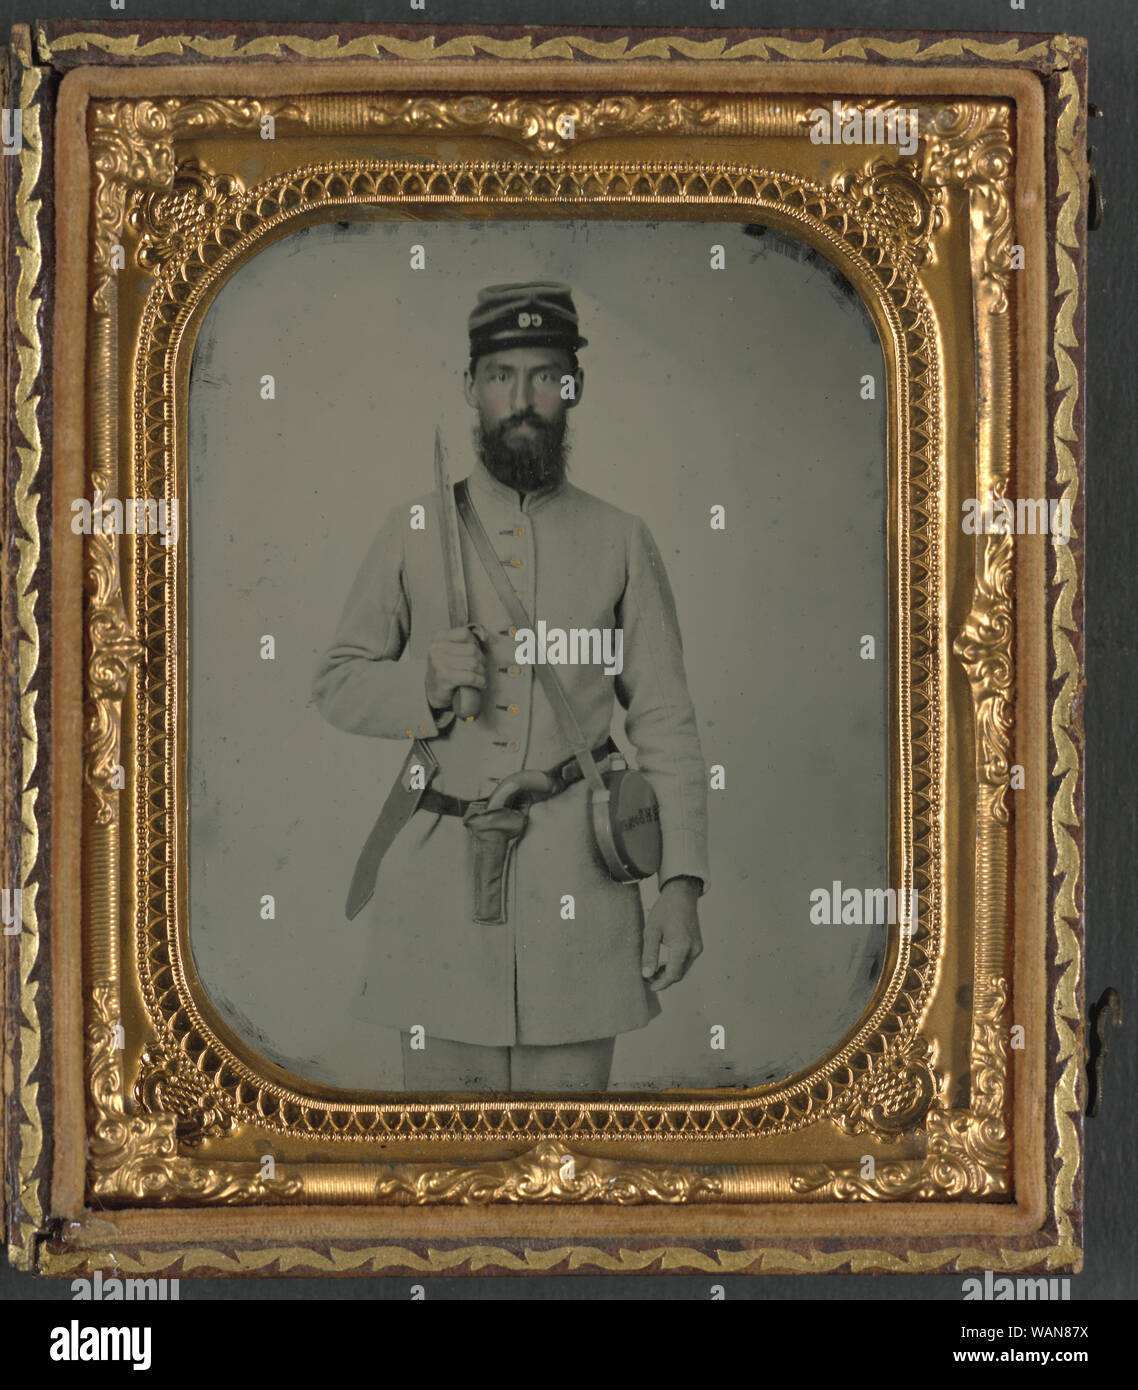 Corporal John Agee Booker von Co.D, 21 Virginia Infanterie Regiment, in Uniform mit Bowie Messer, Pistole, Musketen und blechtrommel Kantine mit seinem Namen darauf Stockfoto